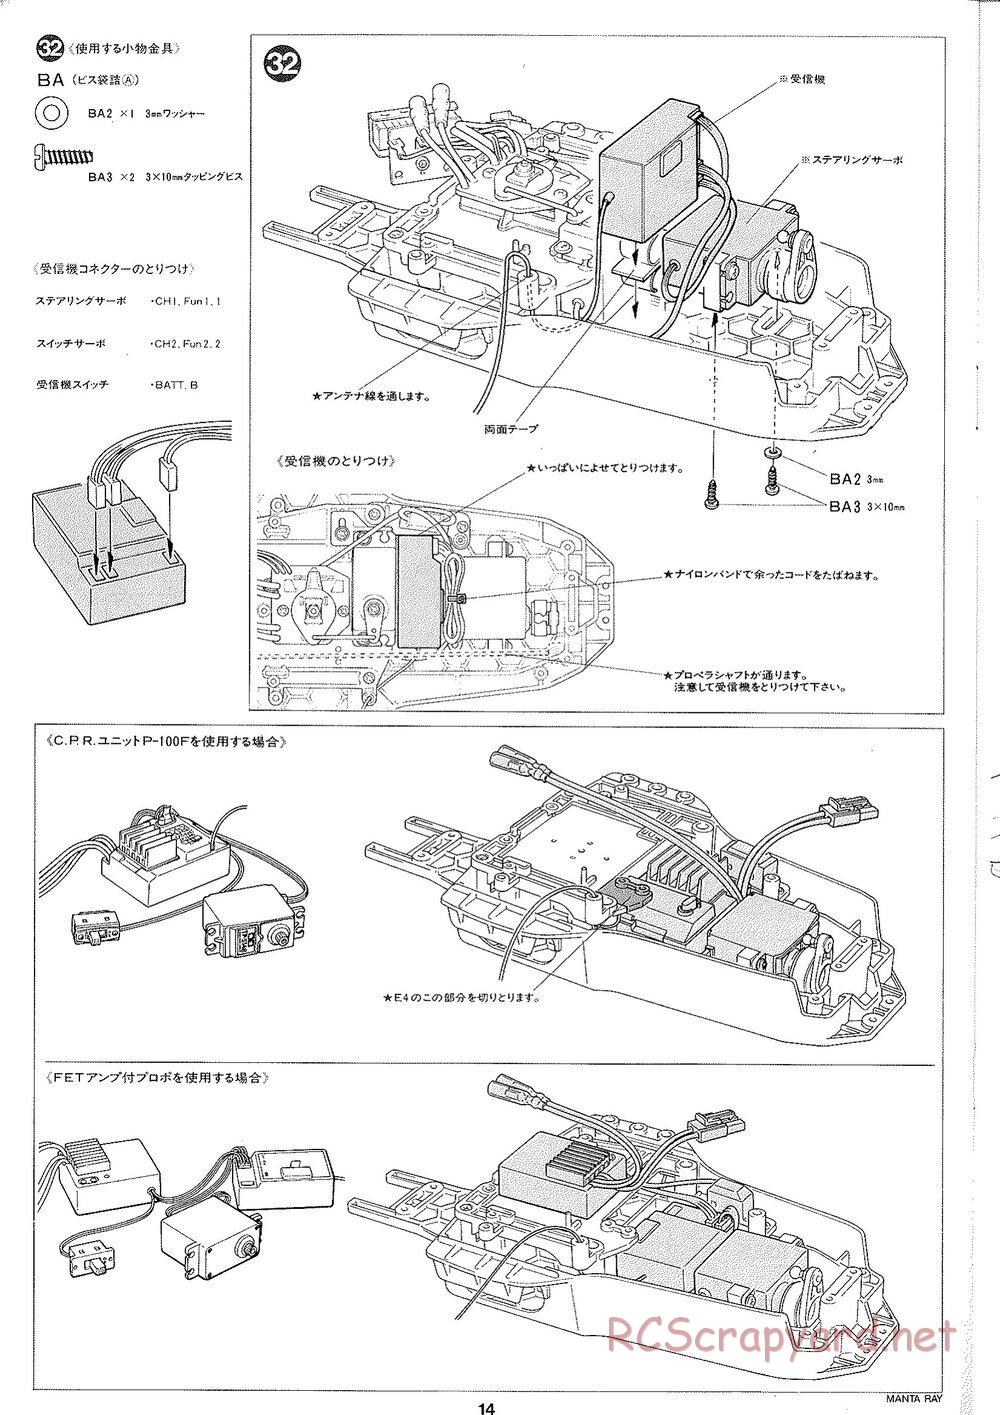 Tamiya - Manta Ray 2005 - DF-01 Chassis - Manual - Page 15